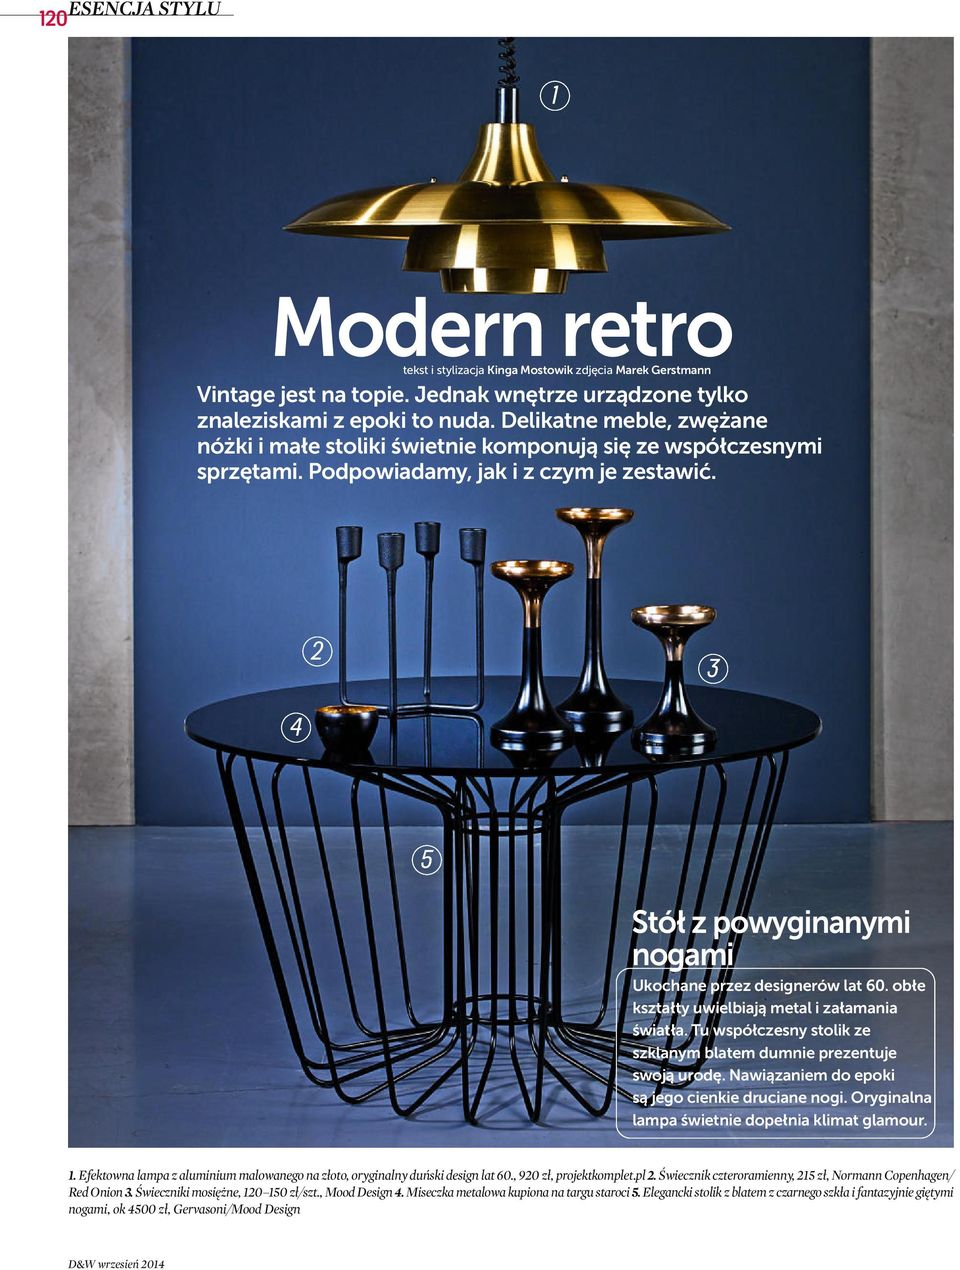 2 3 4 5 Stół z powyginanymi nogami Ukochane przez designerów lat 60. obłe kształty uwielbiają metal i załamania światła. Tu współczesny stolik ze szklanym blatem dumnie prezentuje swoją urodę.